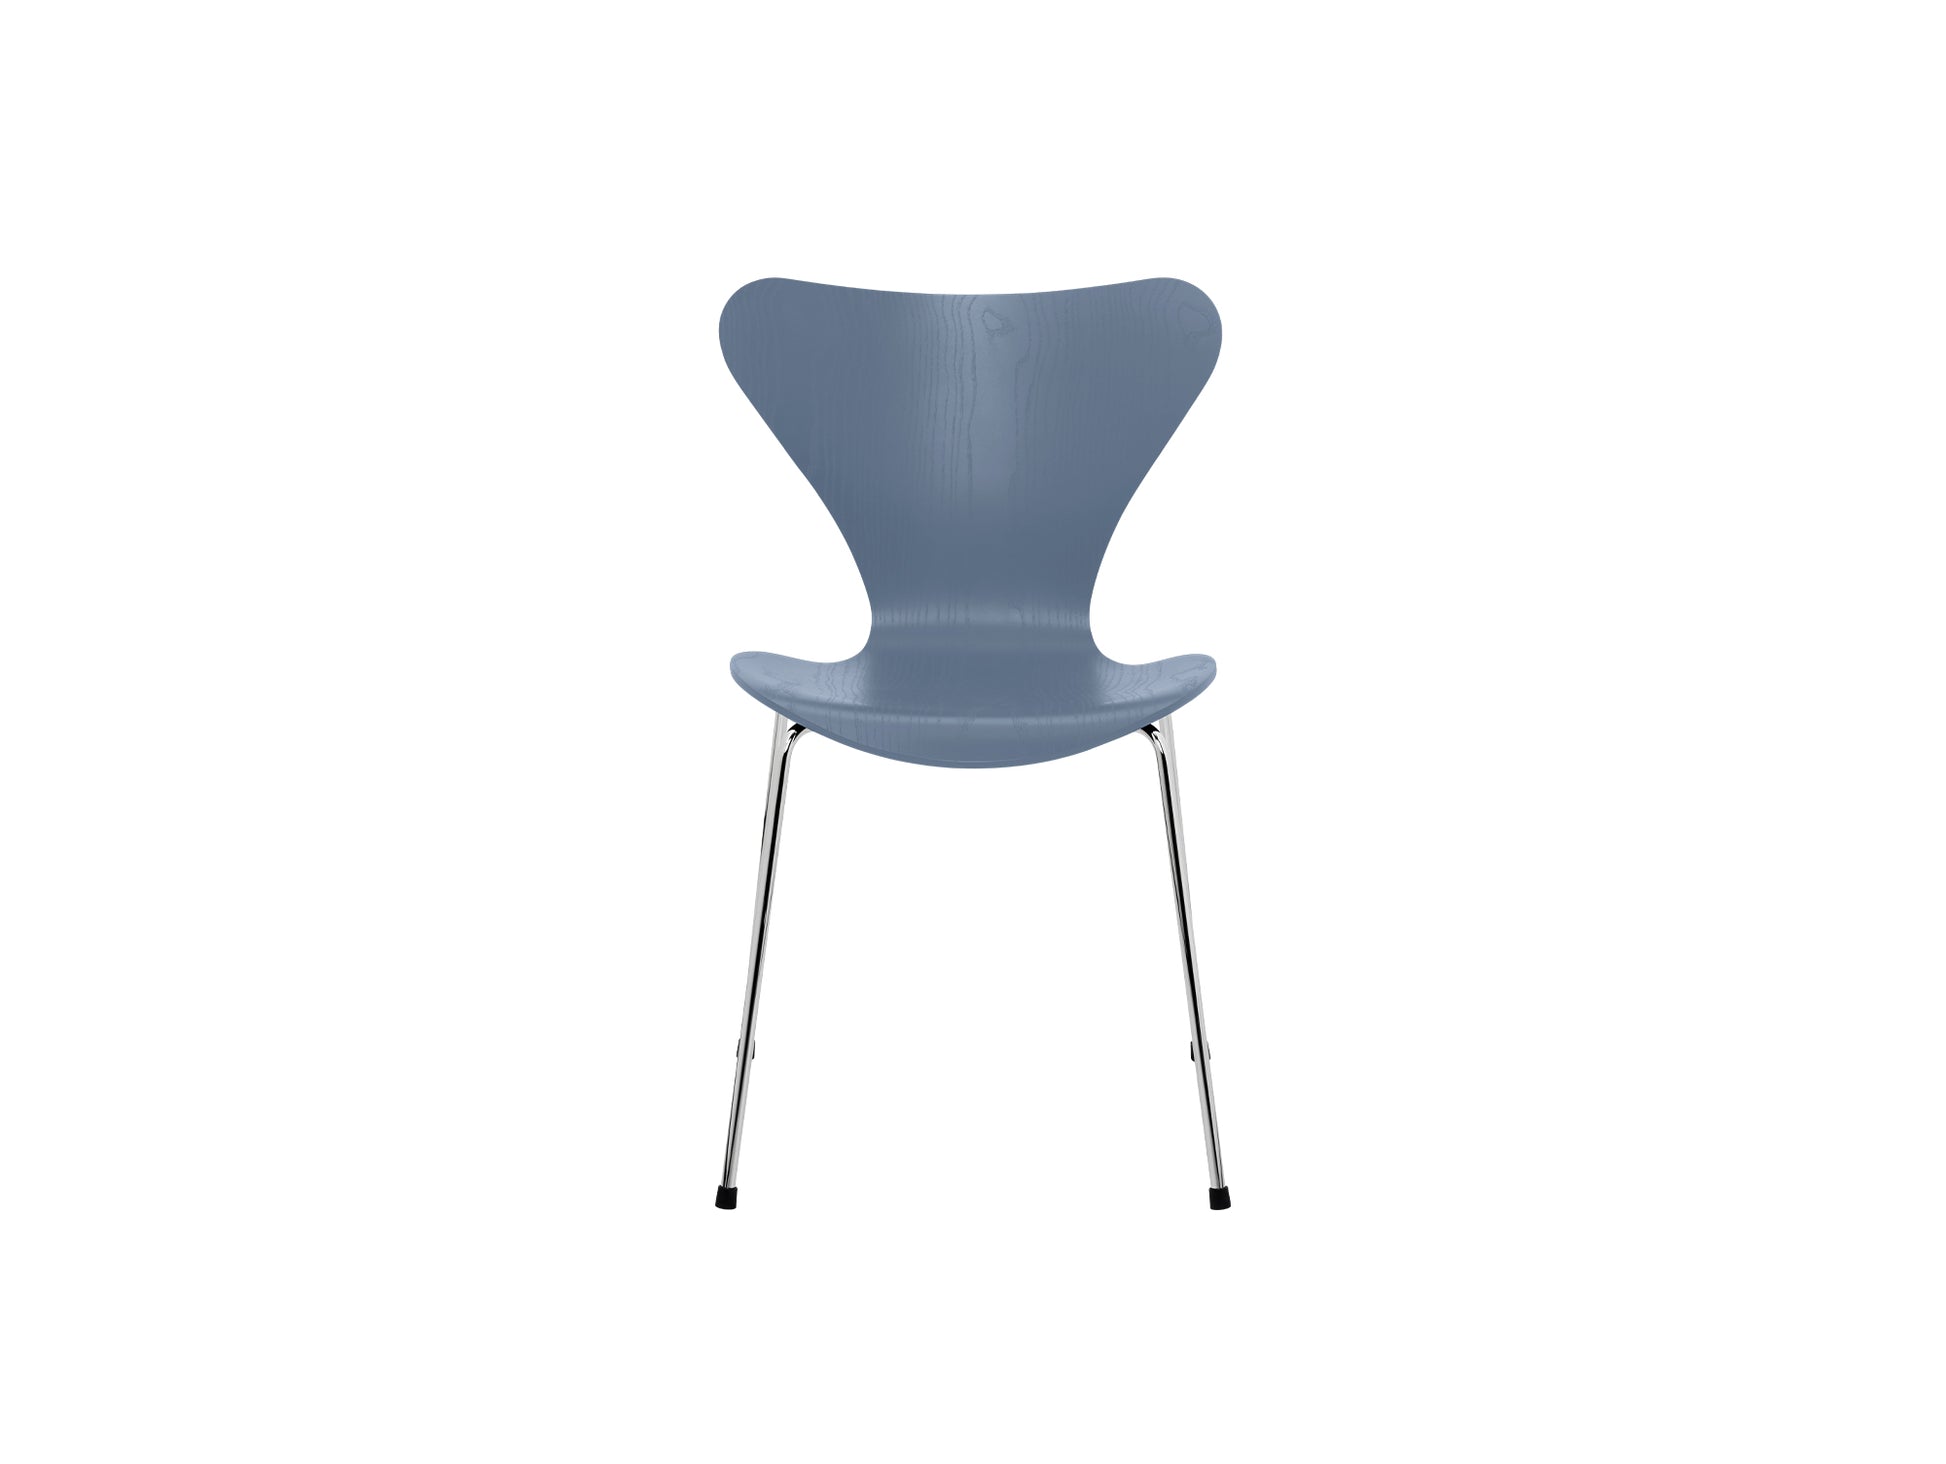 Series 7™ 3107 Dining Chair by Fritz Hansen - Dusk Blue Coloured Ash Veneer Shell / Chromed Steel